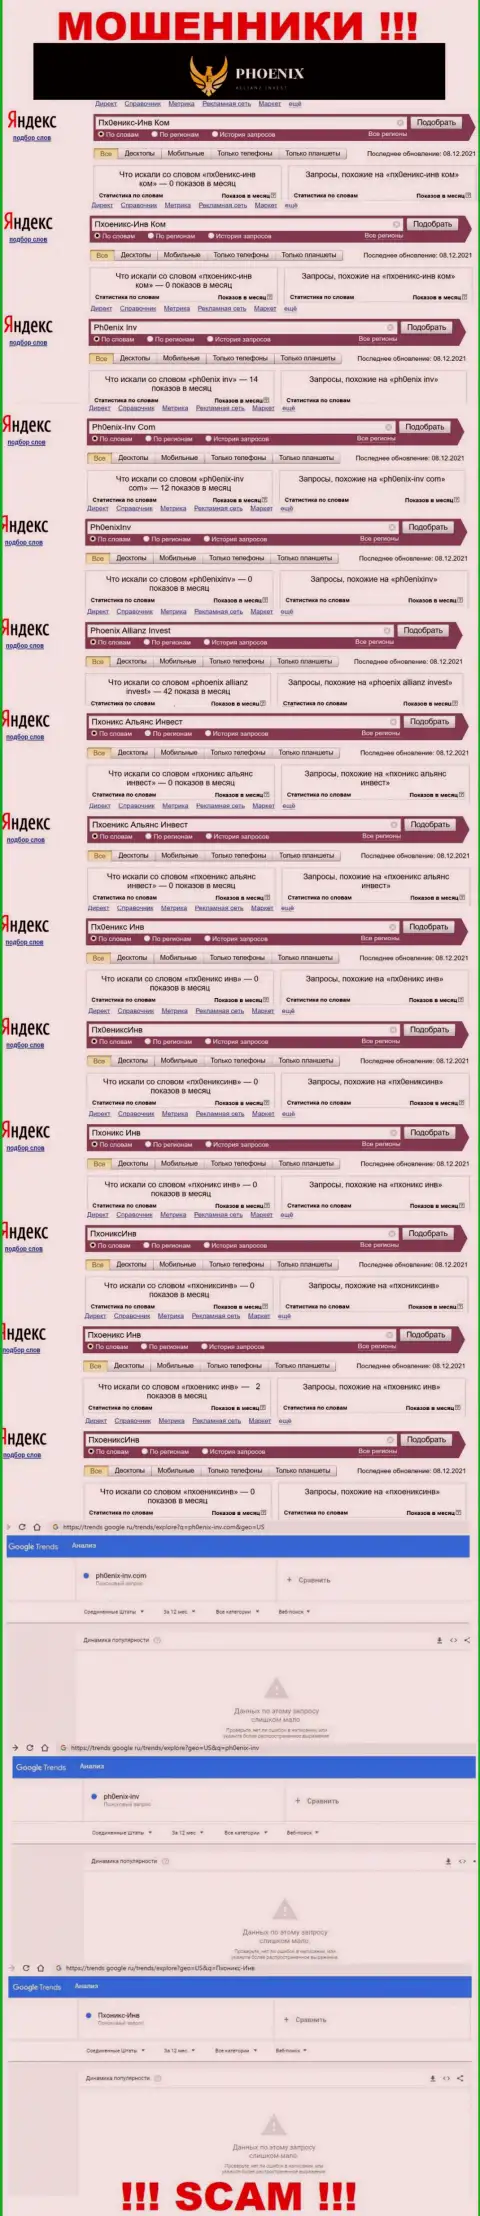 Скрин результата online запросов по противозаконно действующей компании Ph0enix-Inv Com